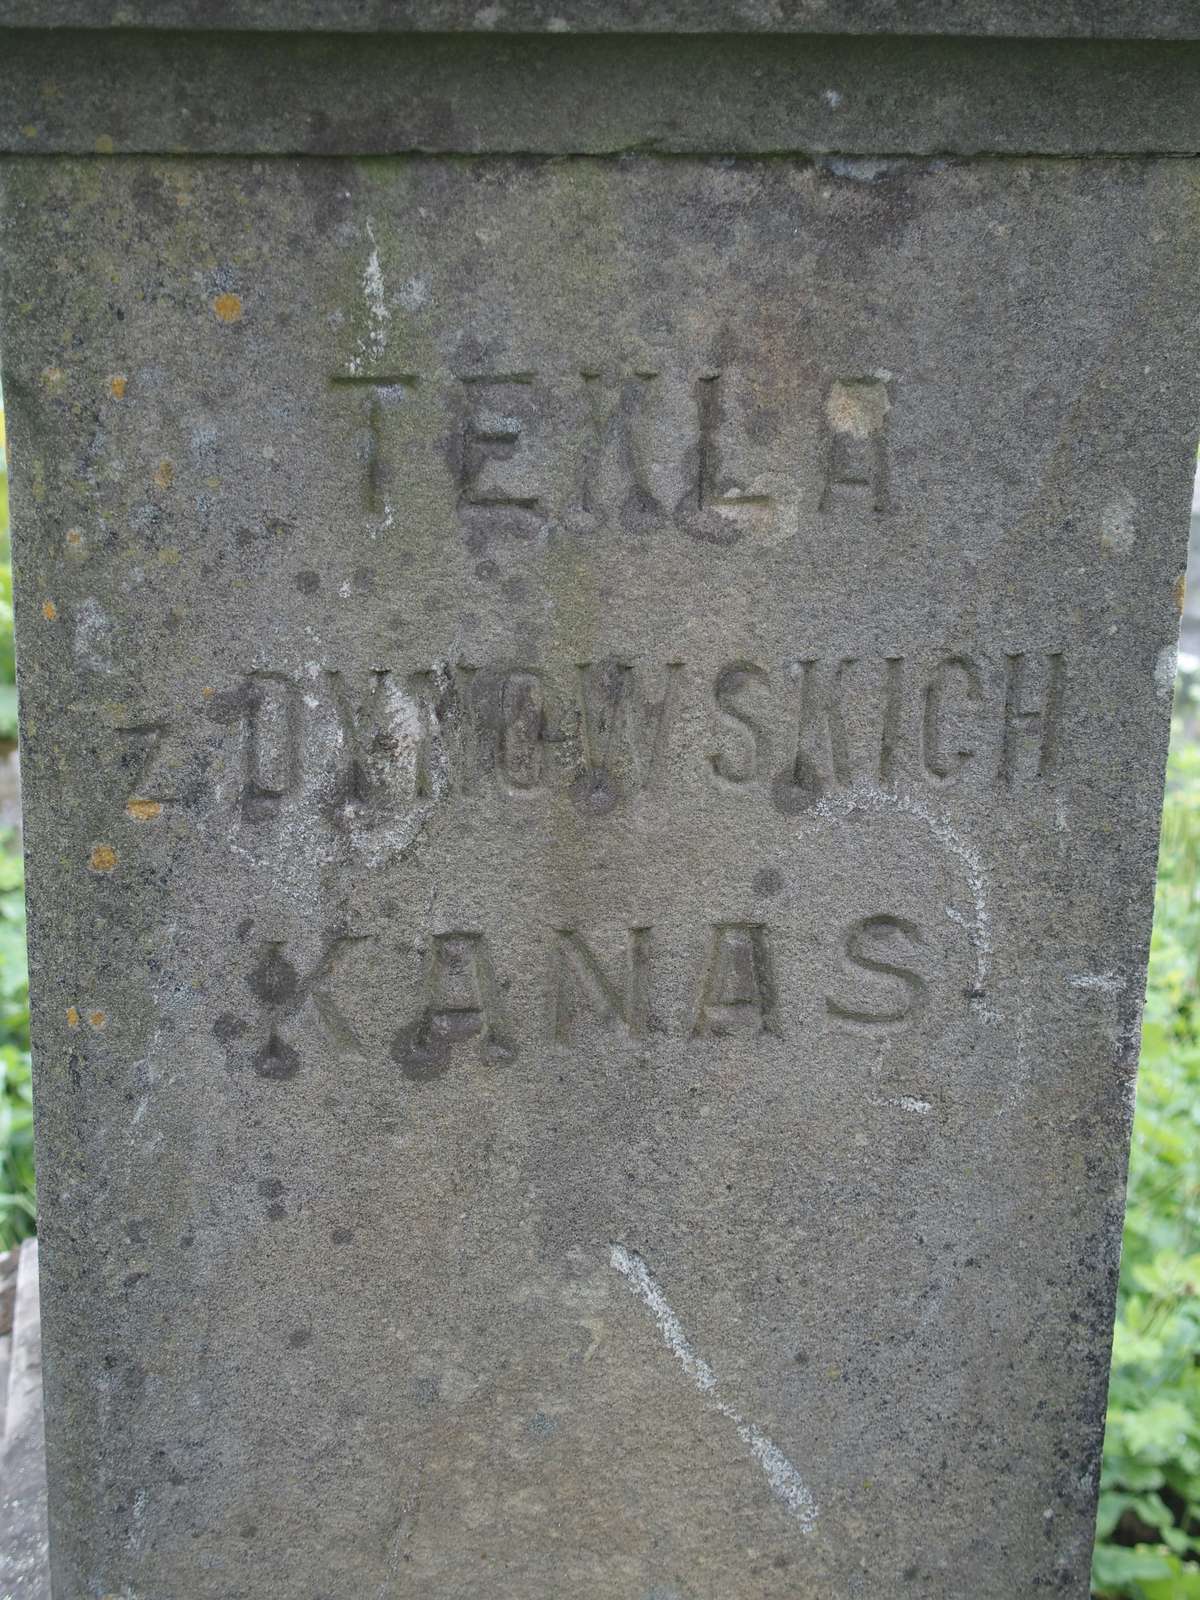 Tombstone of Joseph, Barbara and Tekla Kanas, Zbarazh cemetery, as of 2018.